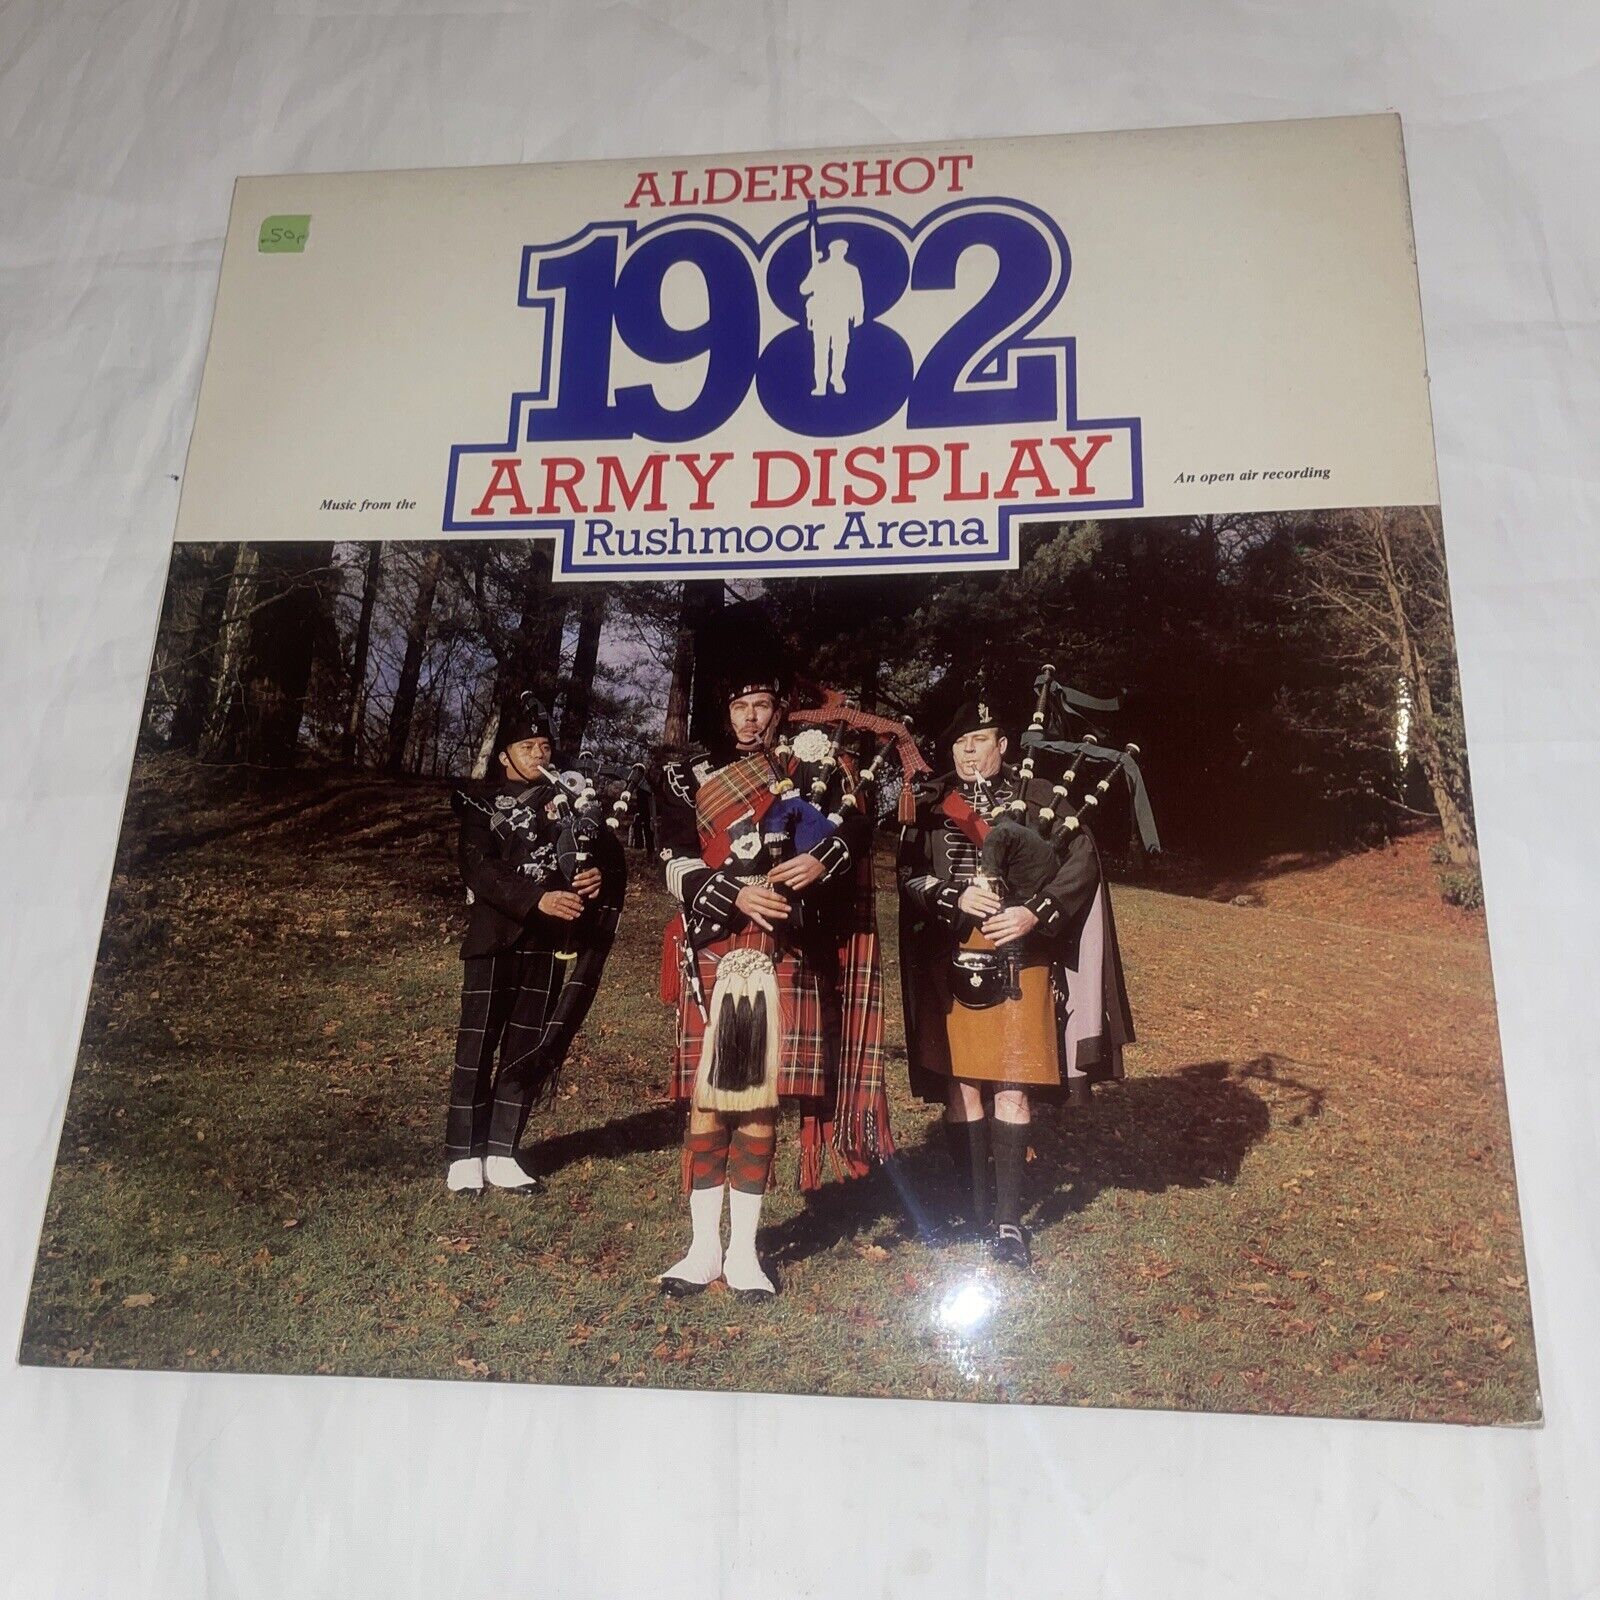 ALDERSHOT ARMY DISPLAY 1982 [Rushmoor Arena] Military LP Royal Medical Corps 12”